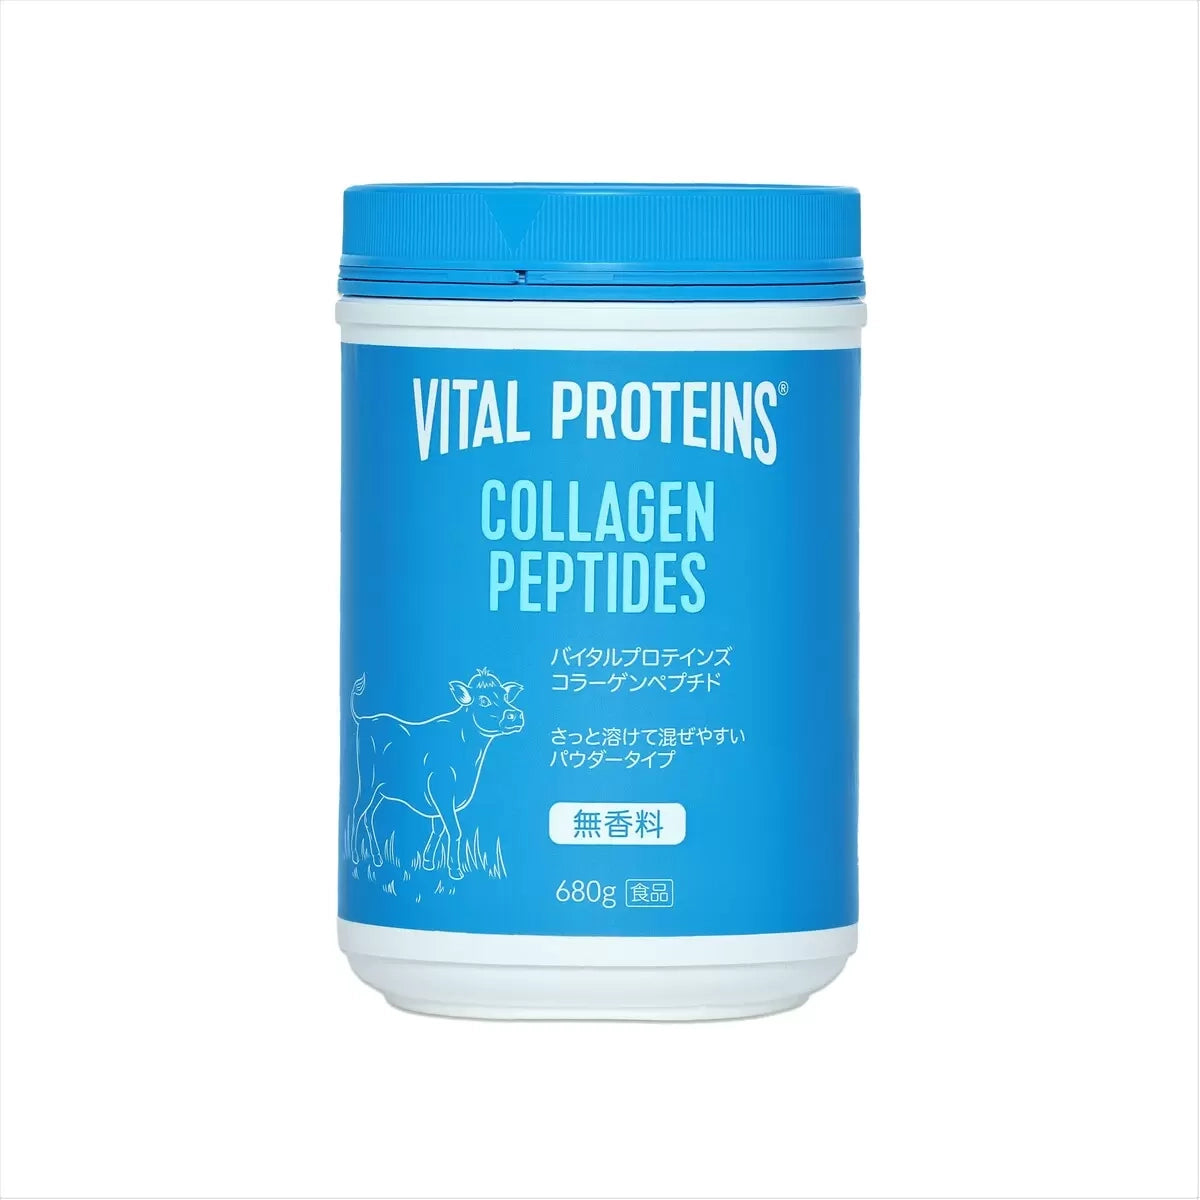 バイタルプロテインズ コラーゲンペプチド 680g Vital Proteins Collagen Peptides